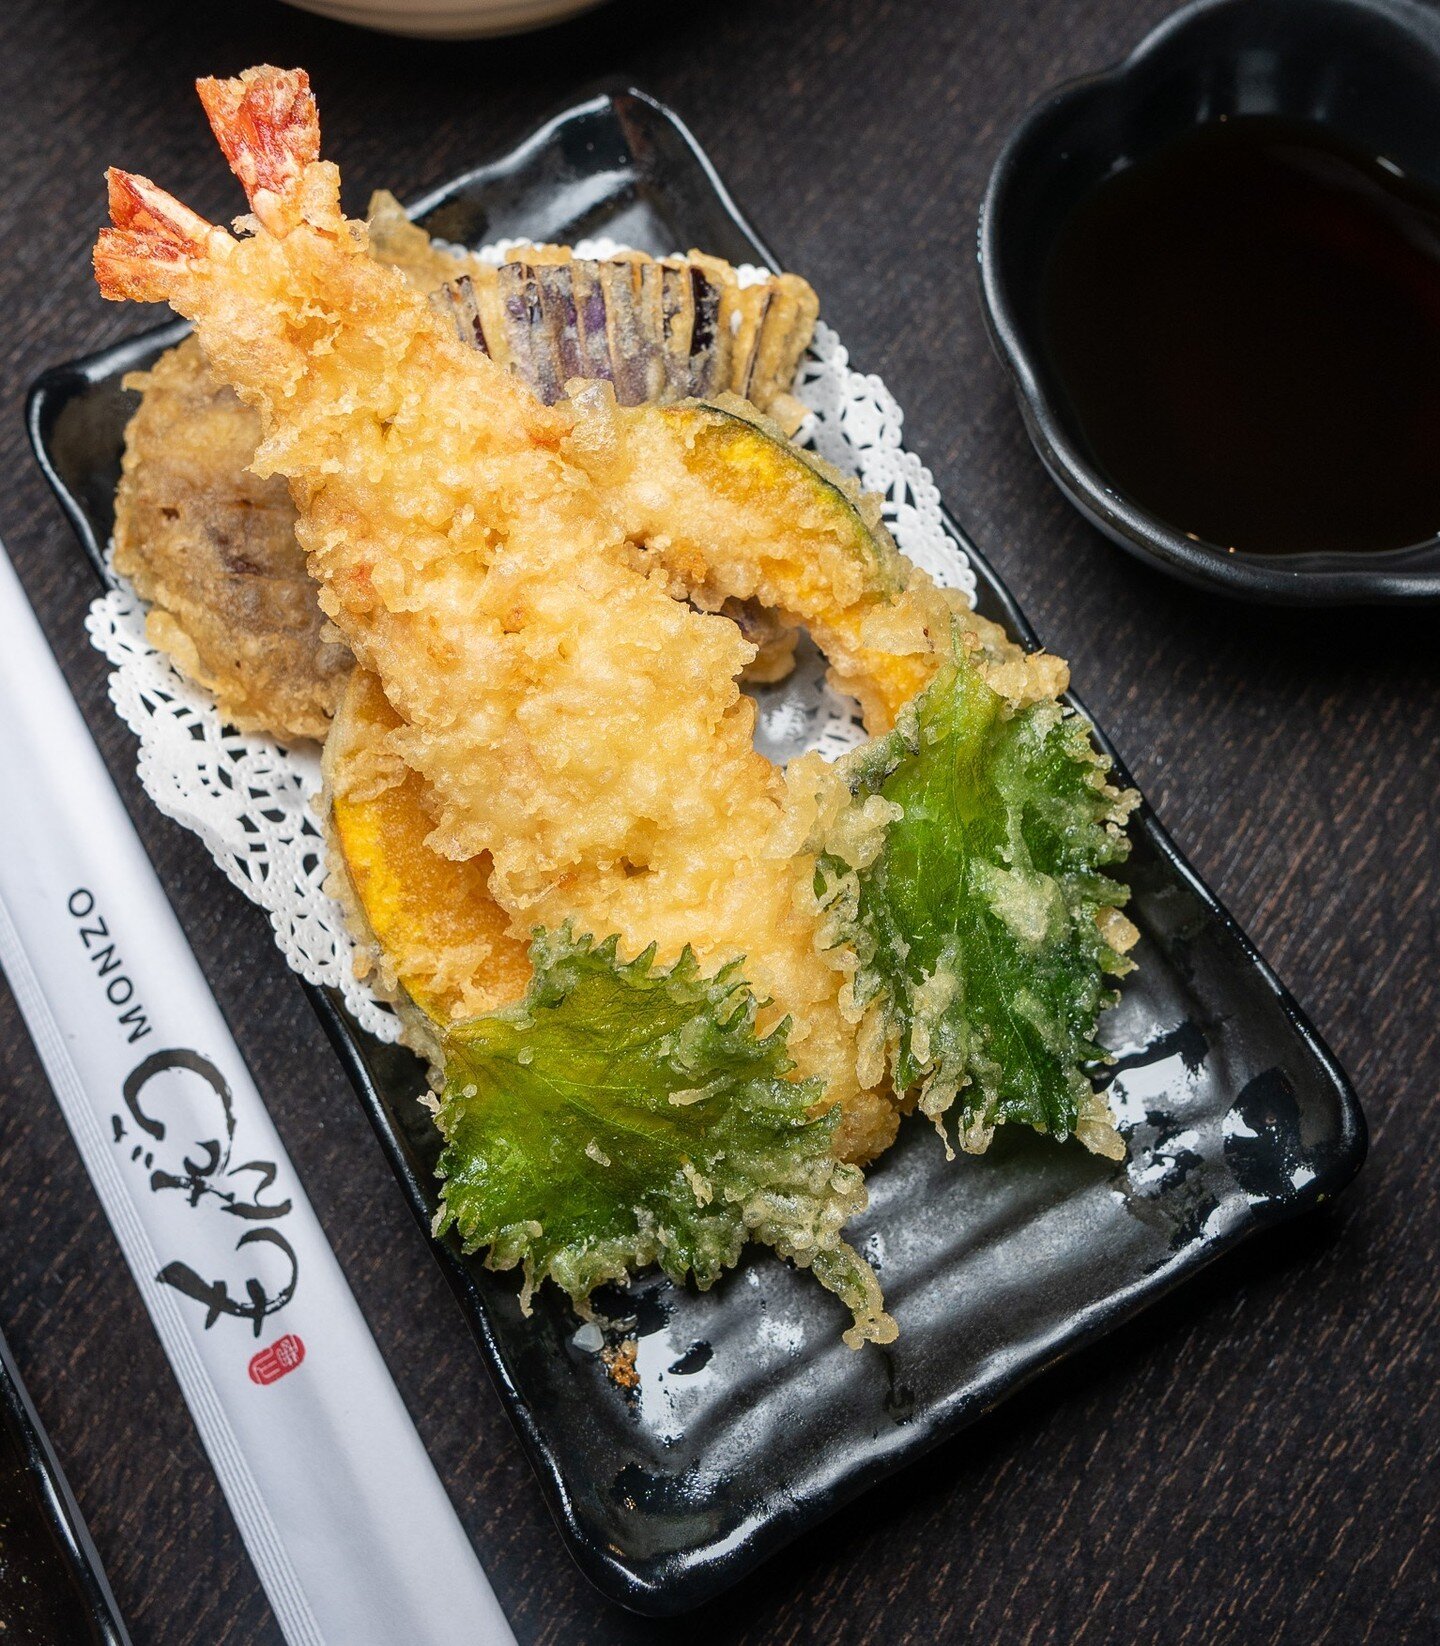 From shrimp to veggies, our tempura is always a crunchy delight! ITADAKIMASU! #FoodieFindsLA 🍤🥢 

👇 Freshly homemade noodles 
◾️◽️◾️◽️◾️◽️◾️◽️◾️◽️
🍜 ᴍᴀʀᴜɢᴀᴍᴇ ᴍᴏɴᴢᴏ ʟᴀ
⏰ ᴍᴏɴ - ᴛʜᴜʀꜱ : 11:30 ᴀᴍ - 9:00 ᴘᴍ 
⏰ ꜰʀɪ - ꜱᴜɴ: 11:30 ᴀᴍ - 10:00 ᴘᴍ
📍 9 ᴇᴀꜱᴛ 